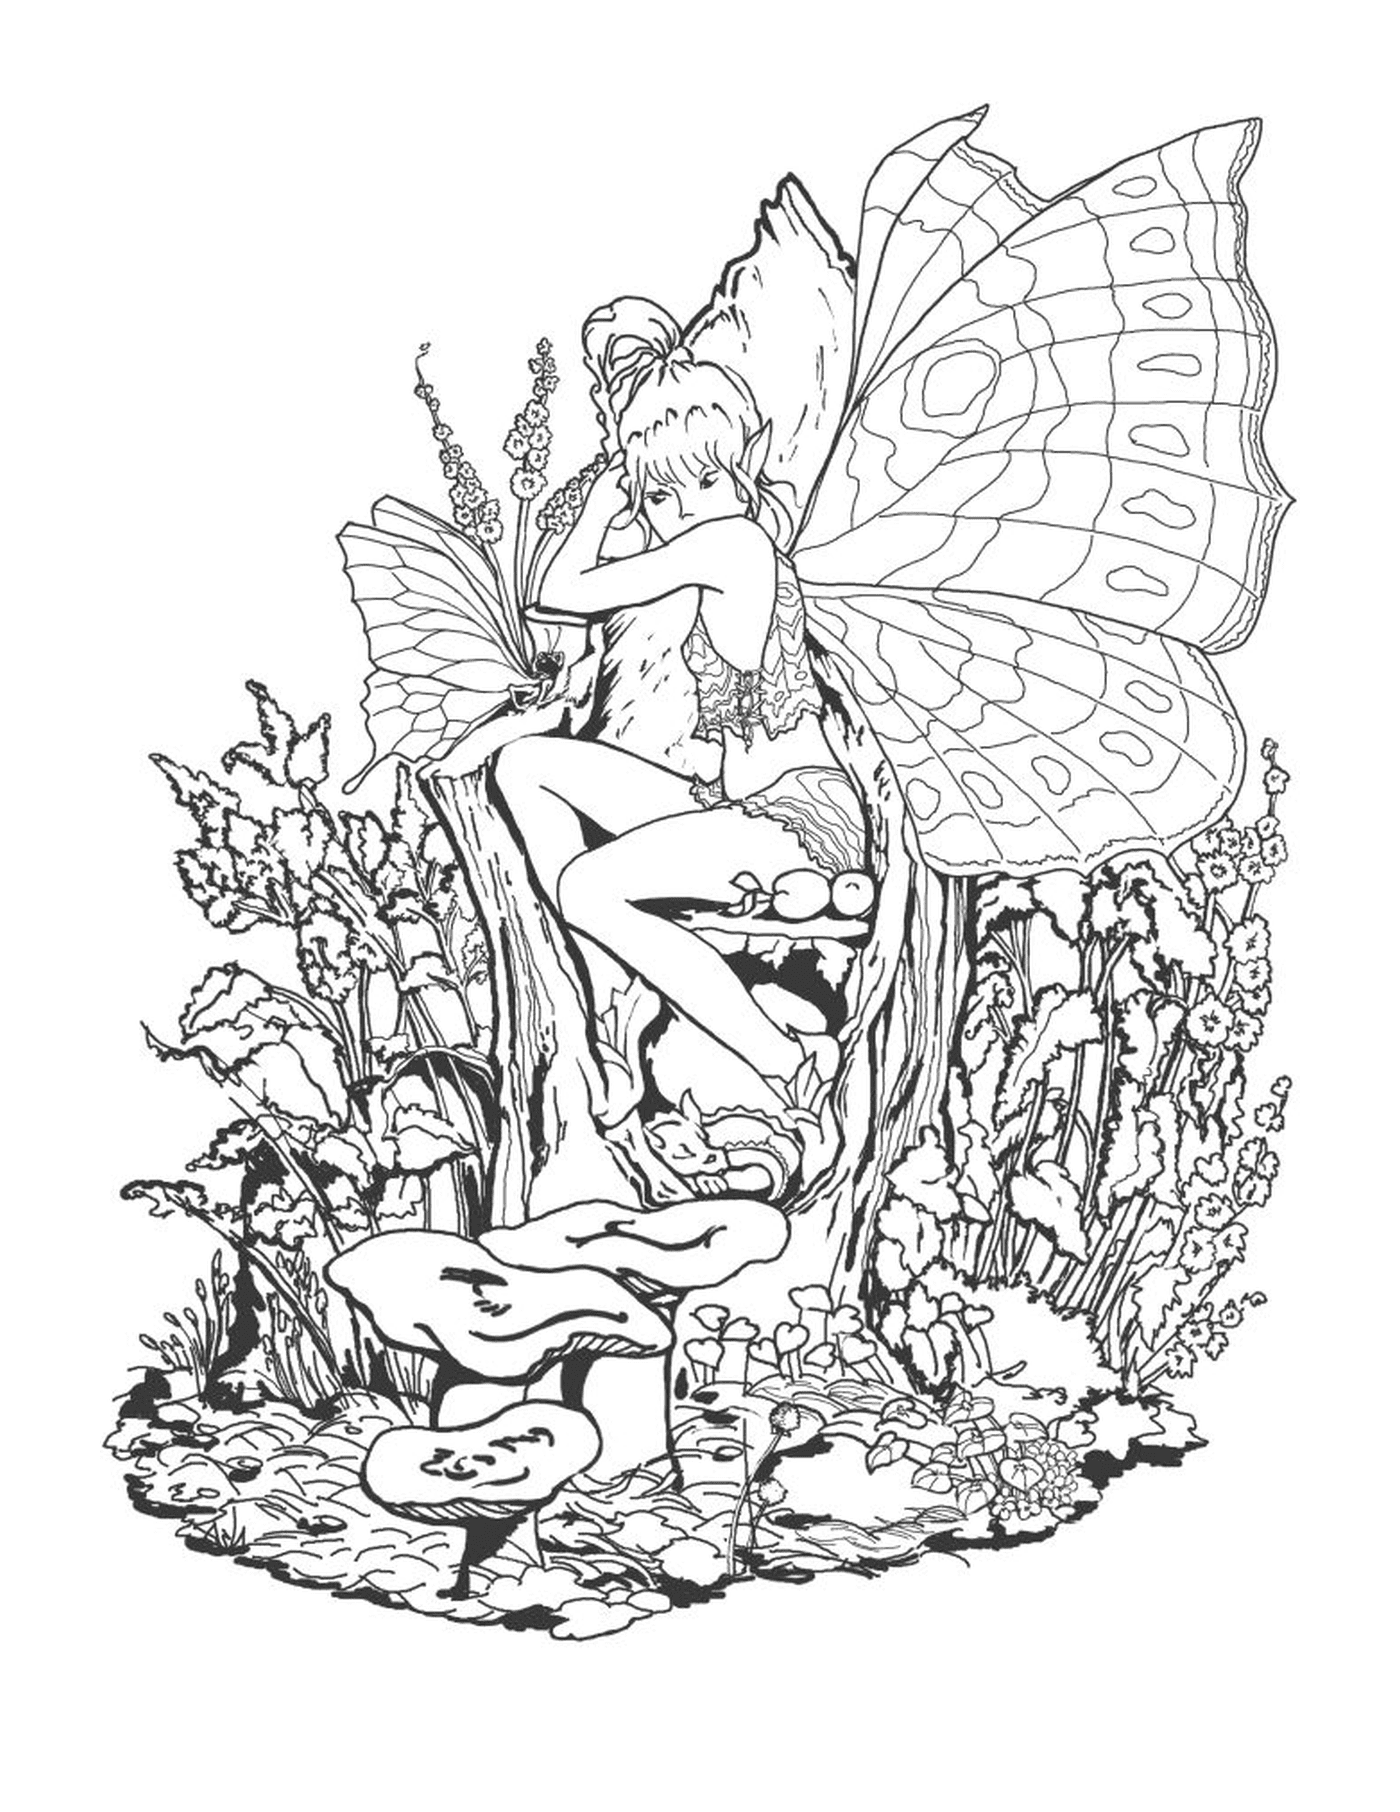  Una hada sentada en un hongo con una mariposa en la mano 